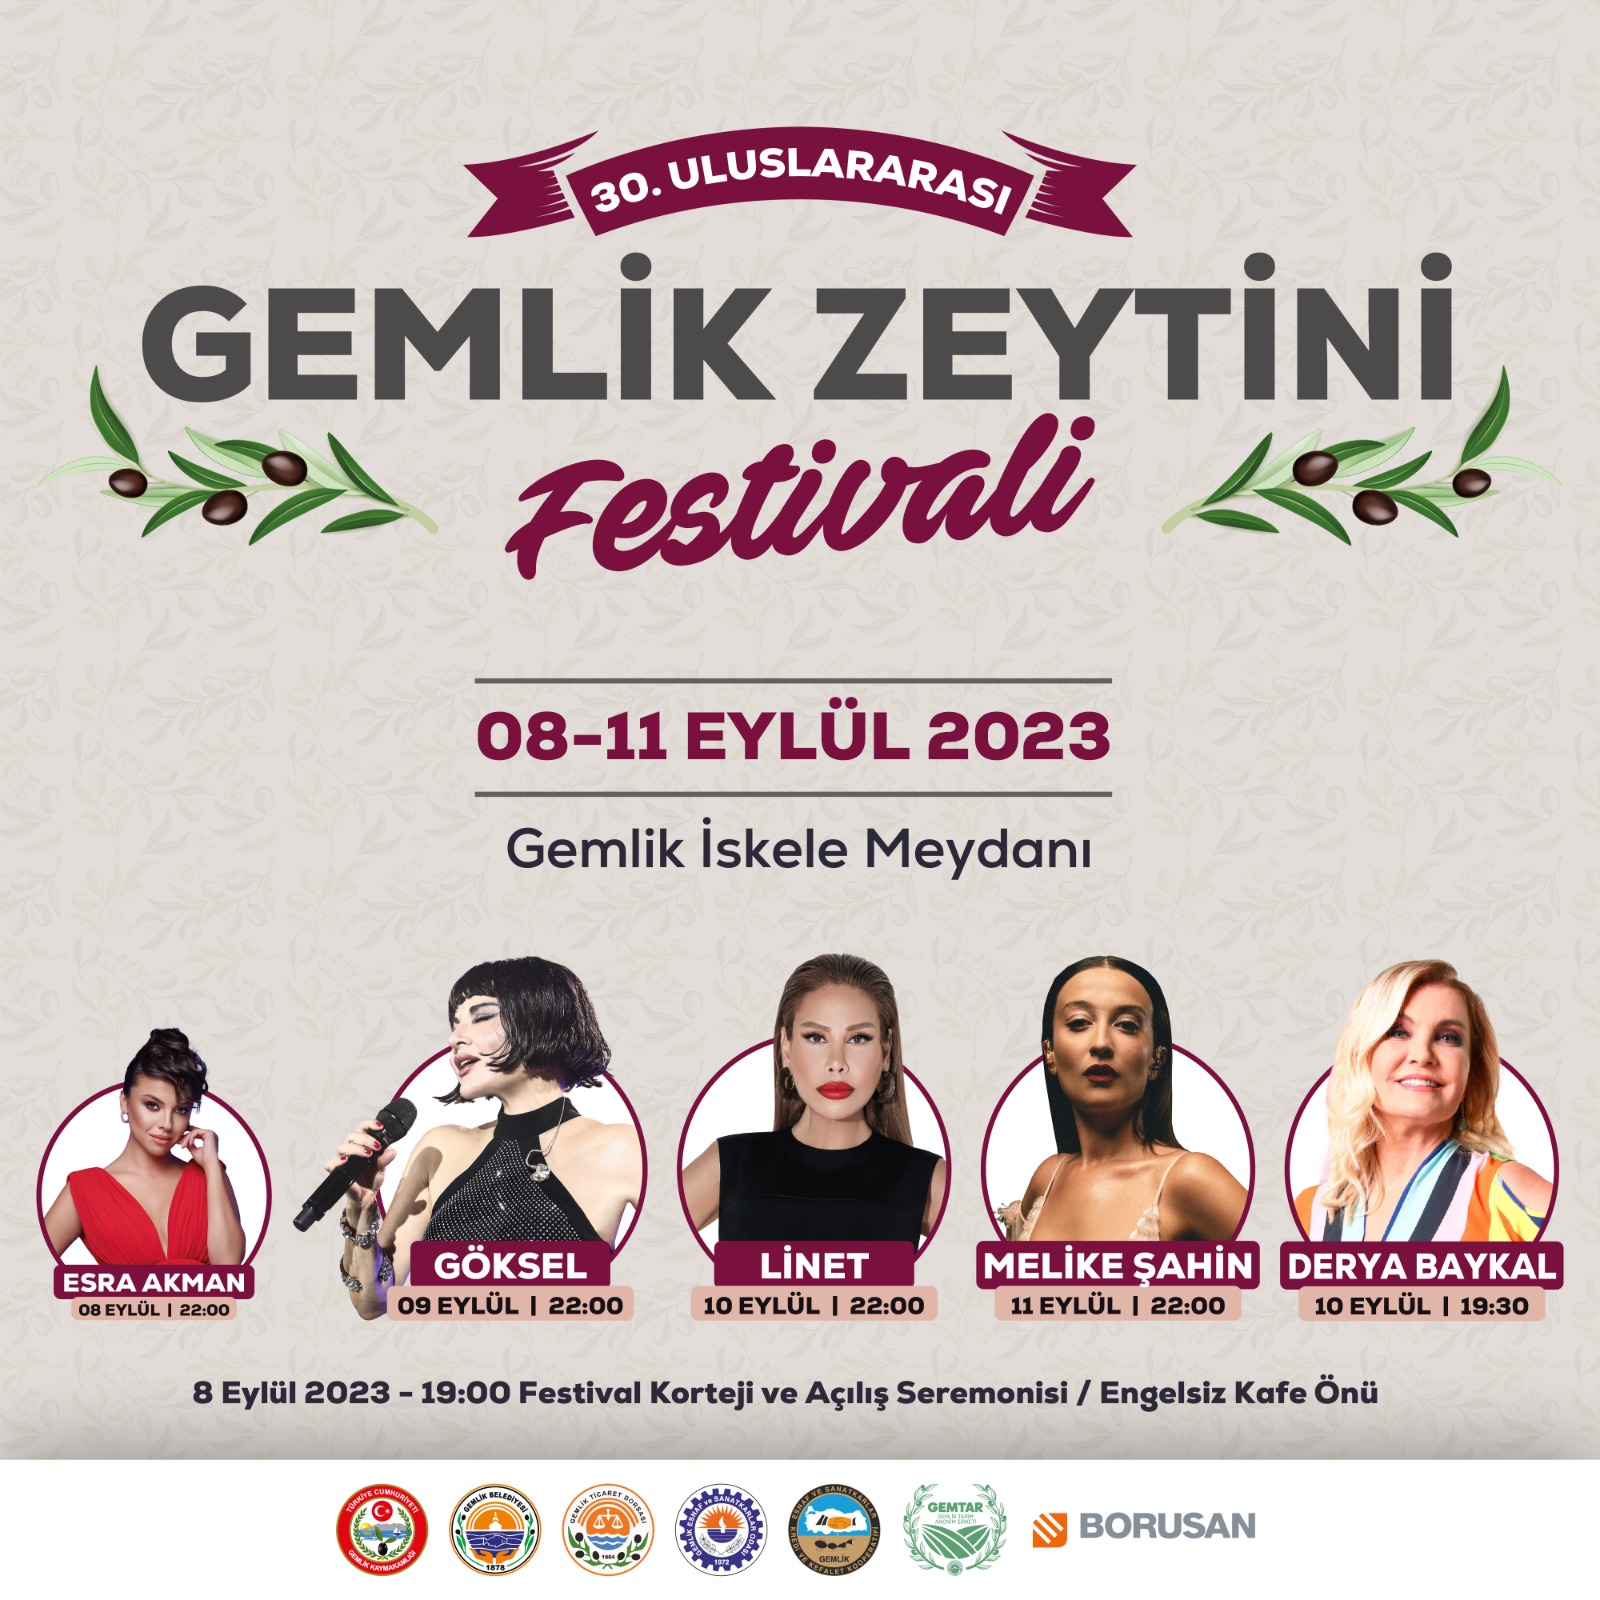 Gemlik Zeytini Festivali